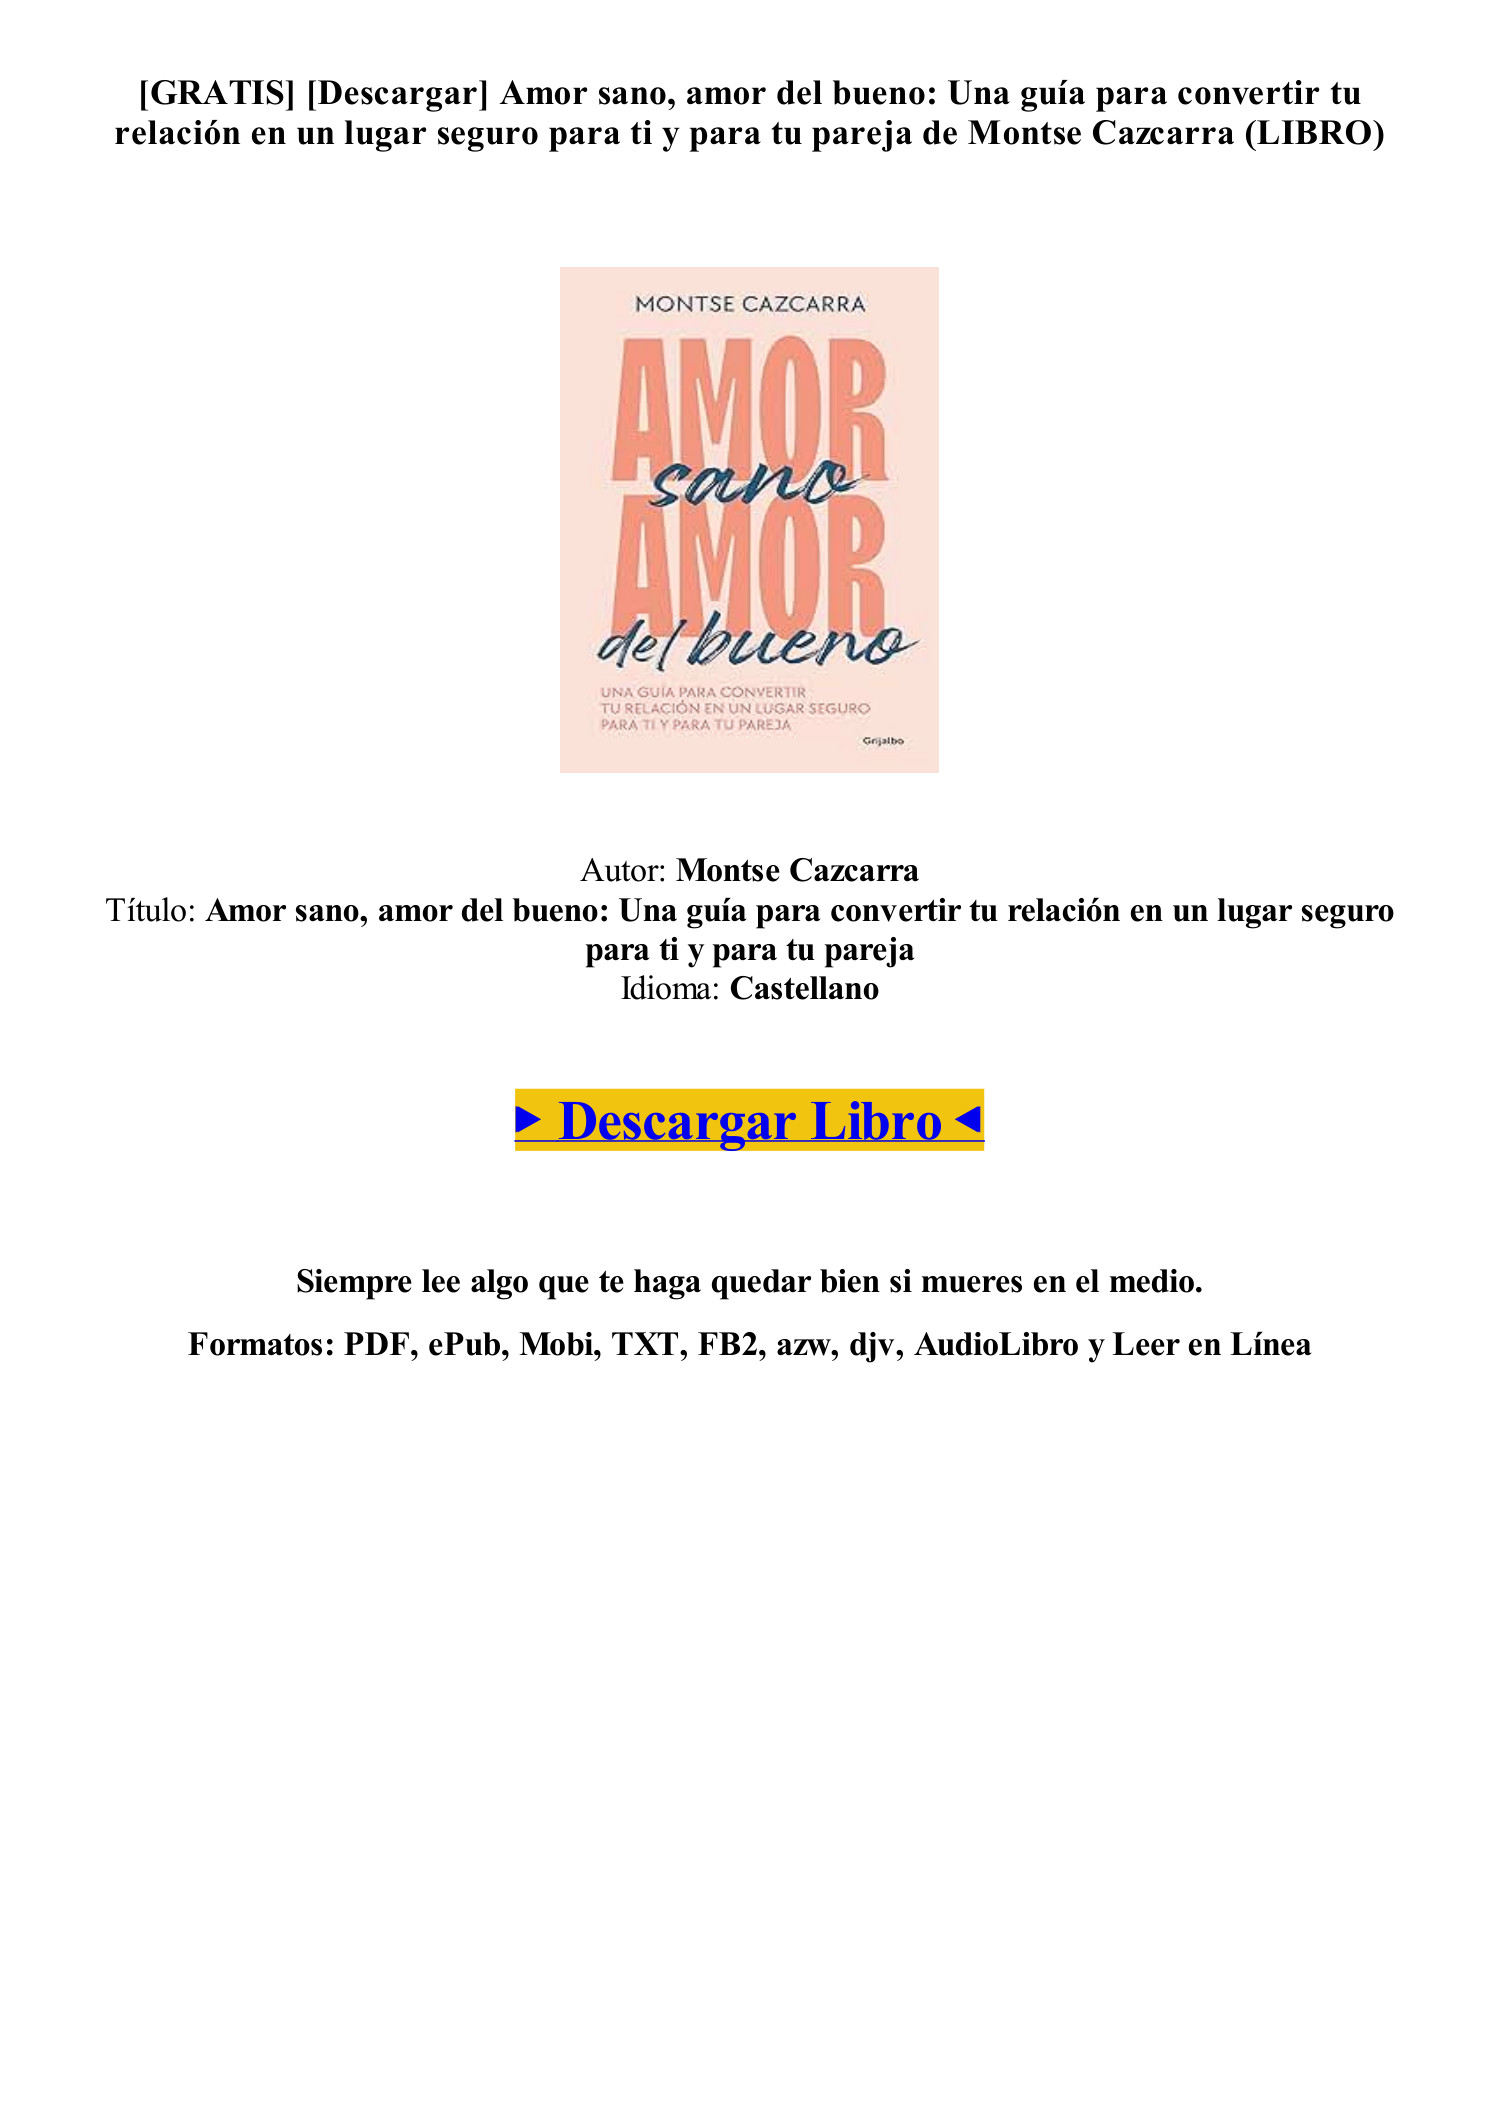 GRATIS) (PDF EPUB) Amor sano, amor del bueno de Montse Cazcarra